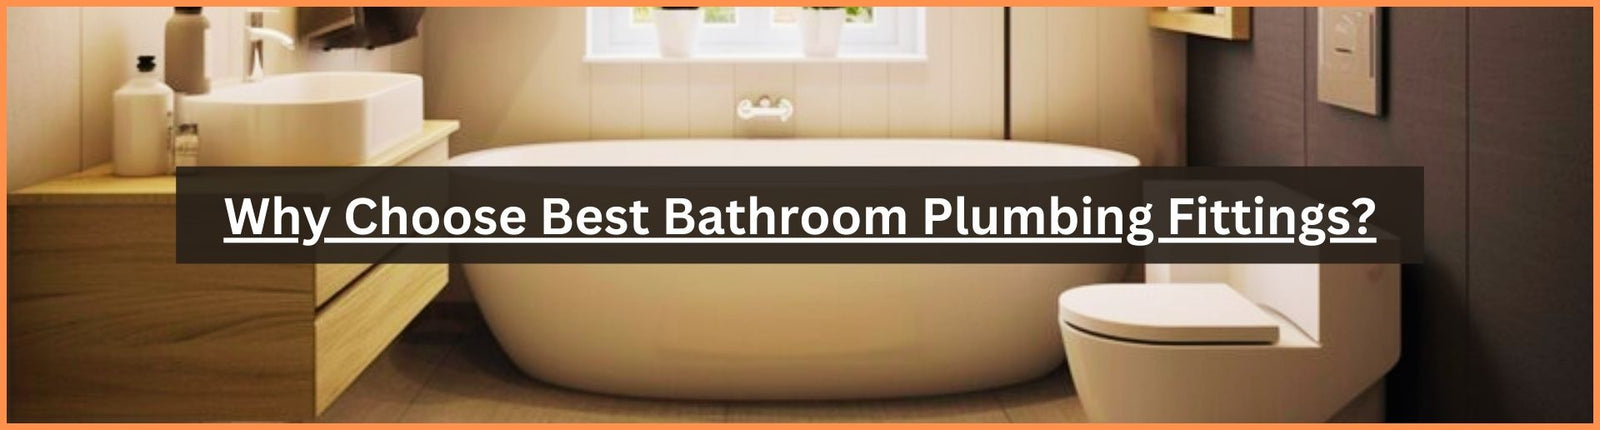 Why Choose Best Bathroom Plumbing Fittings